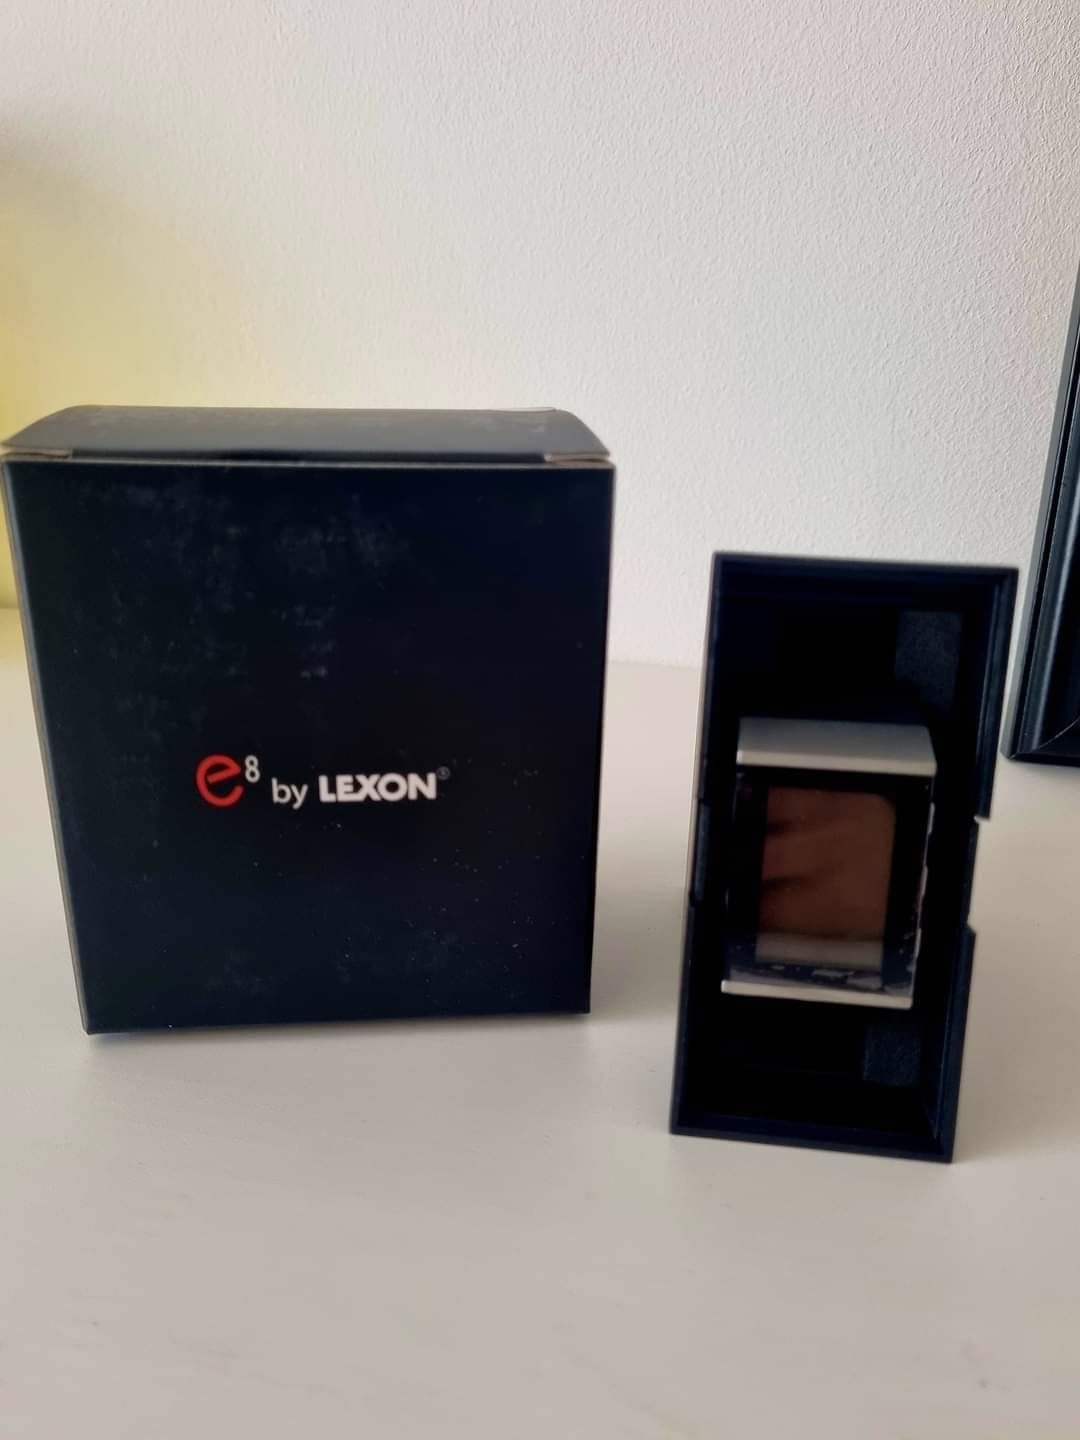 Zegarek binarny Lexon E8 Nowy